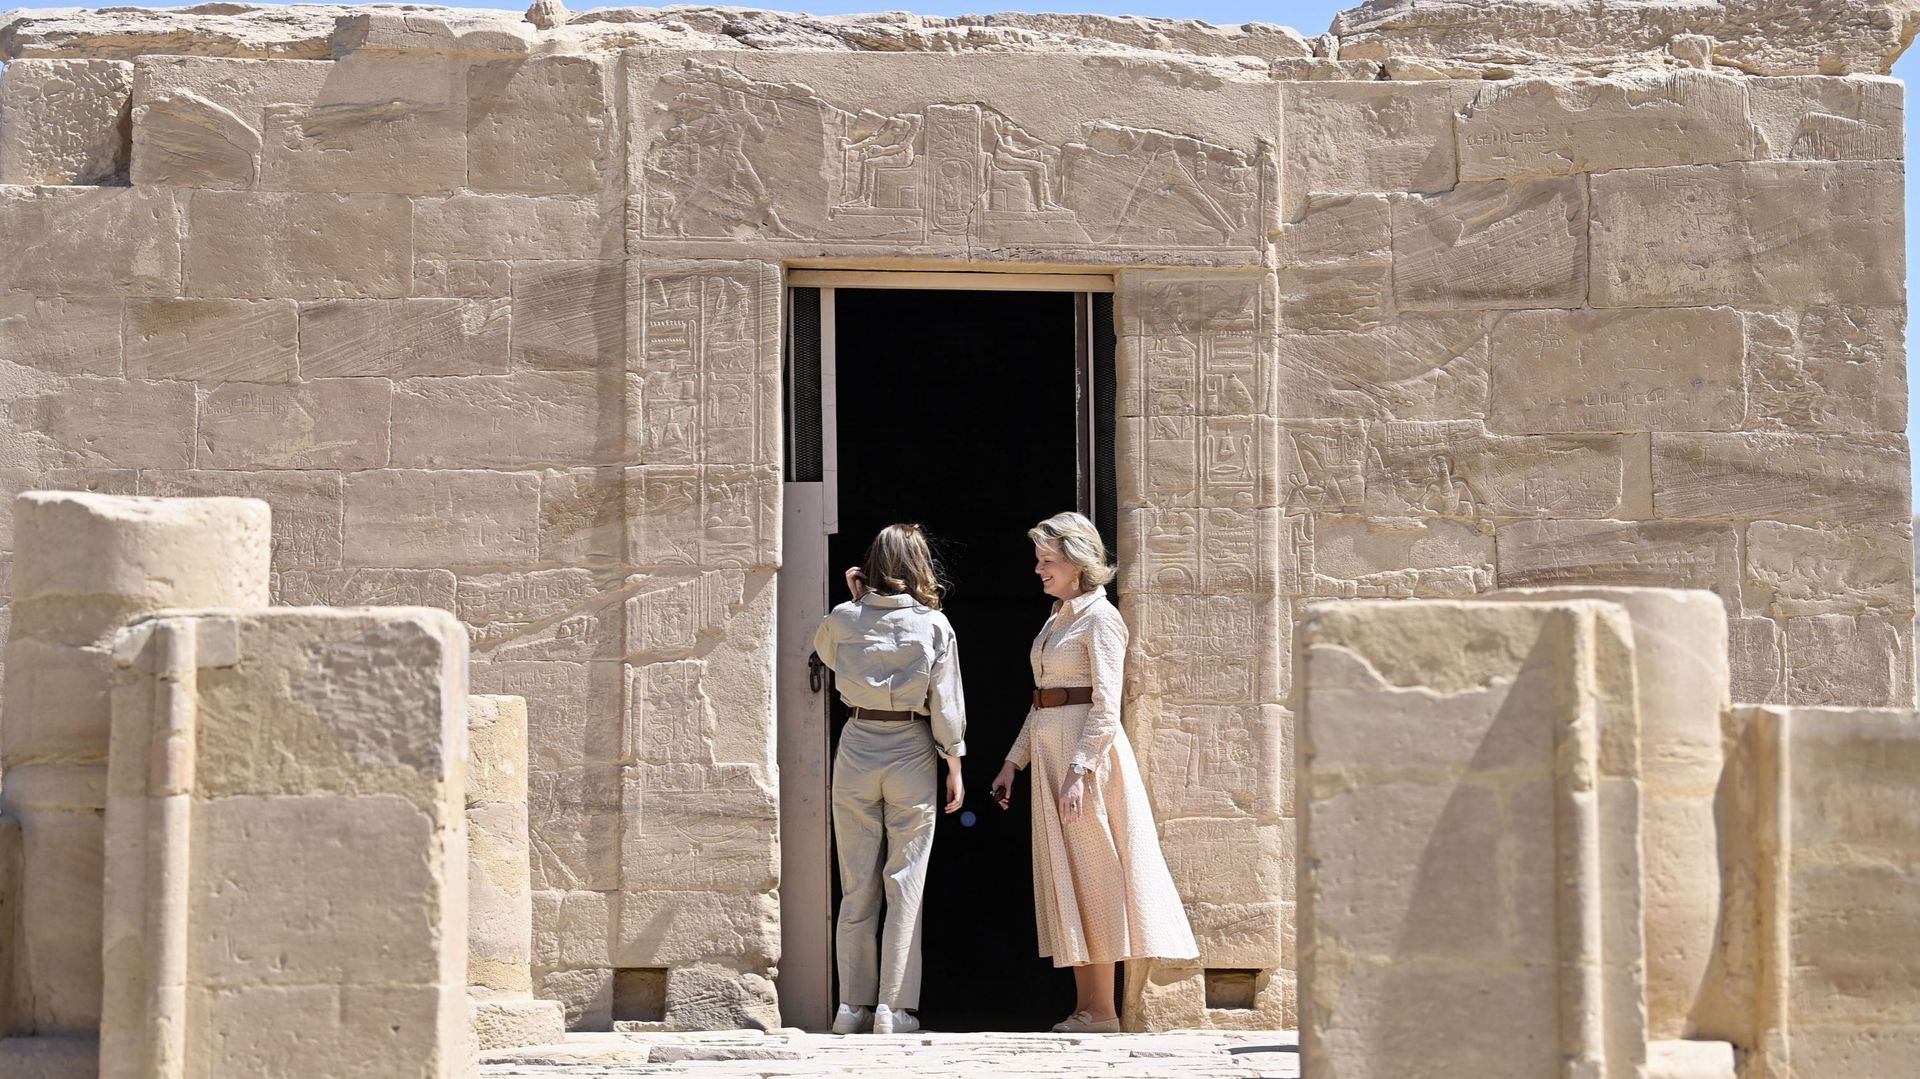 Mathilde et Elisabeth visitent le temple d’Amenhotep III sur le site archéologique d’El Kab